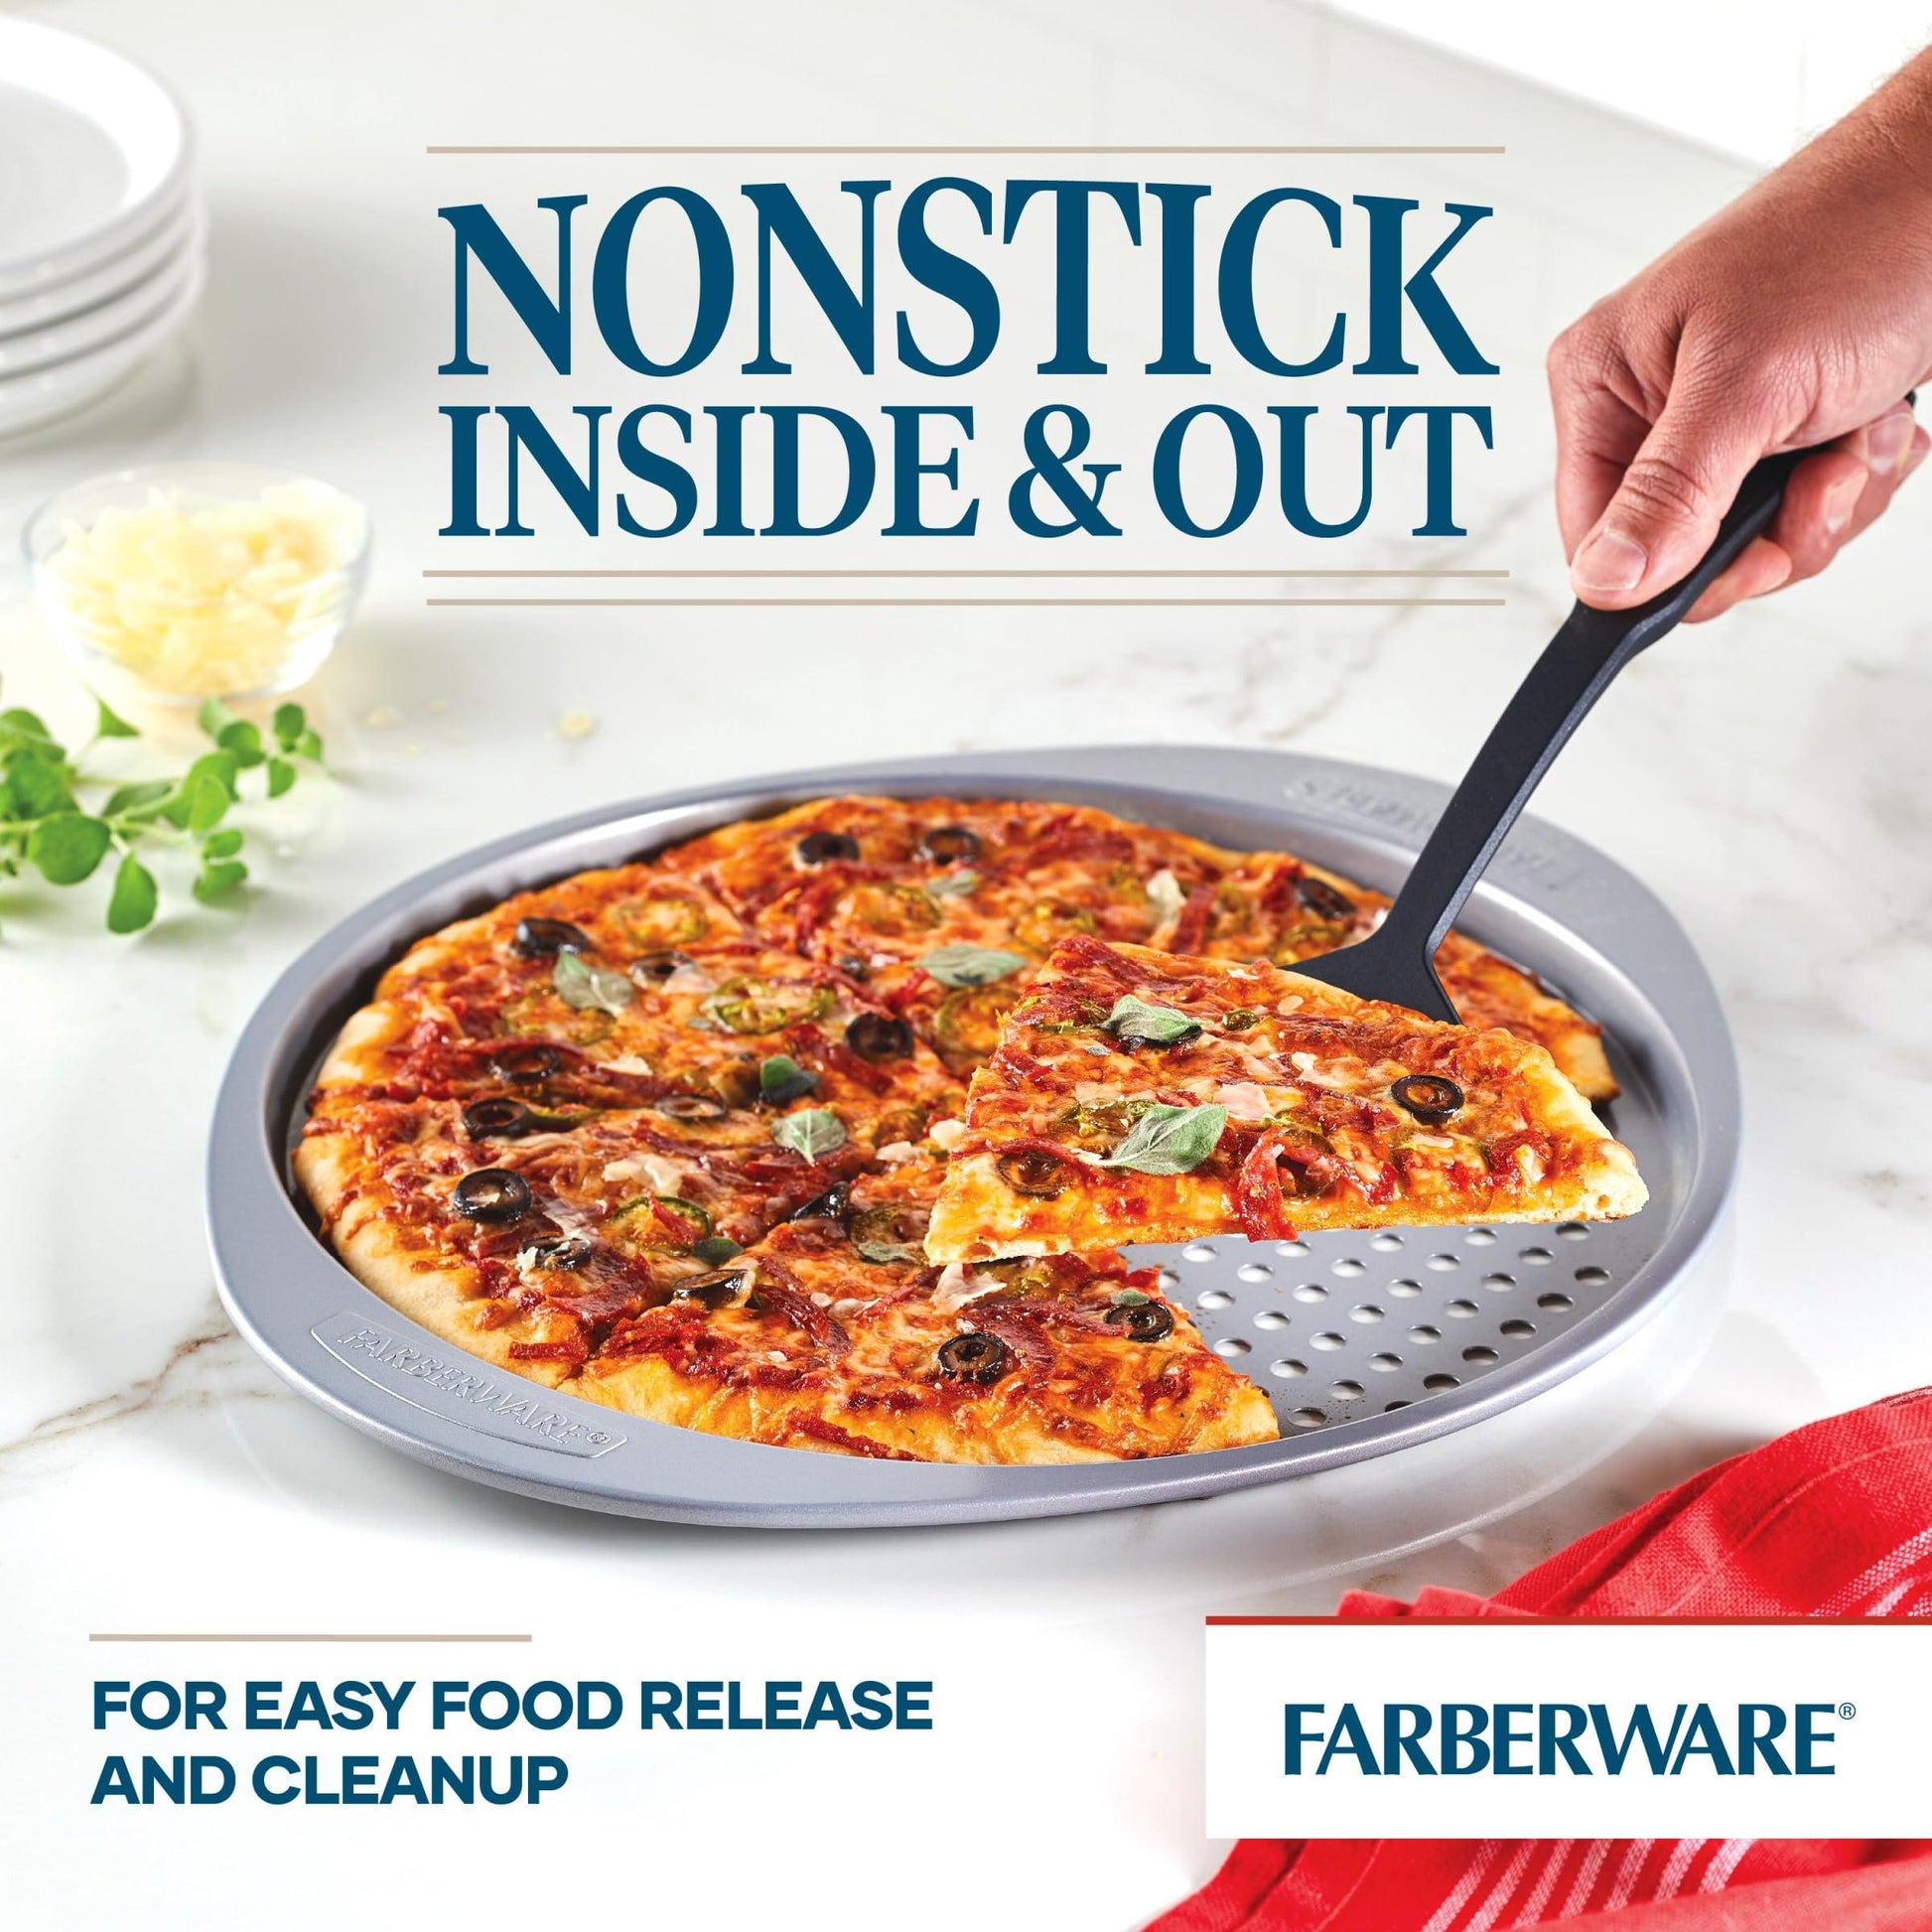 Farberware Nonstick Bakeware Round Pizza/Crisper Pan, 13 Inch, Gray - CookCave